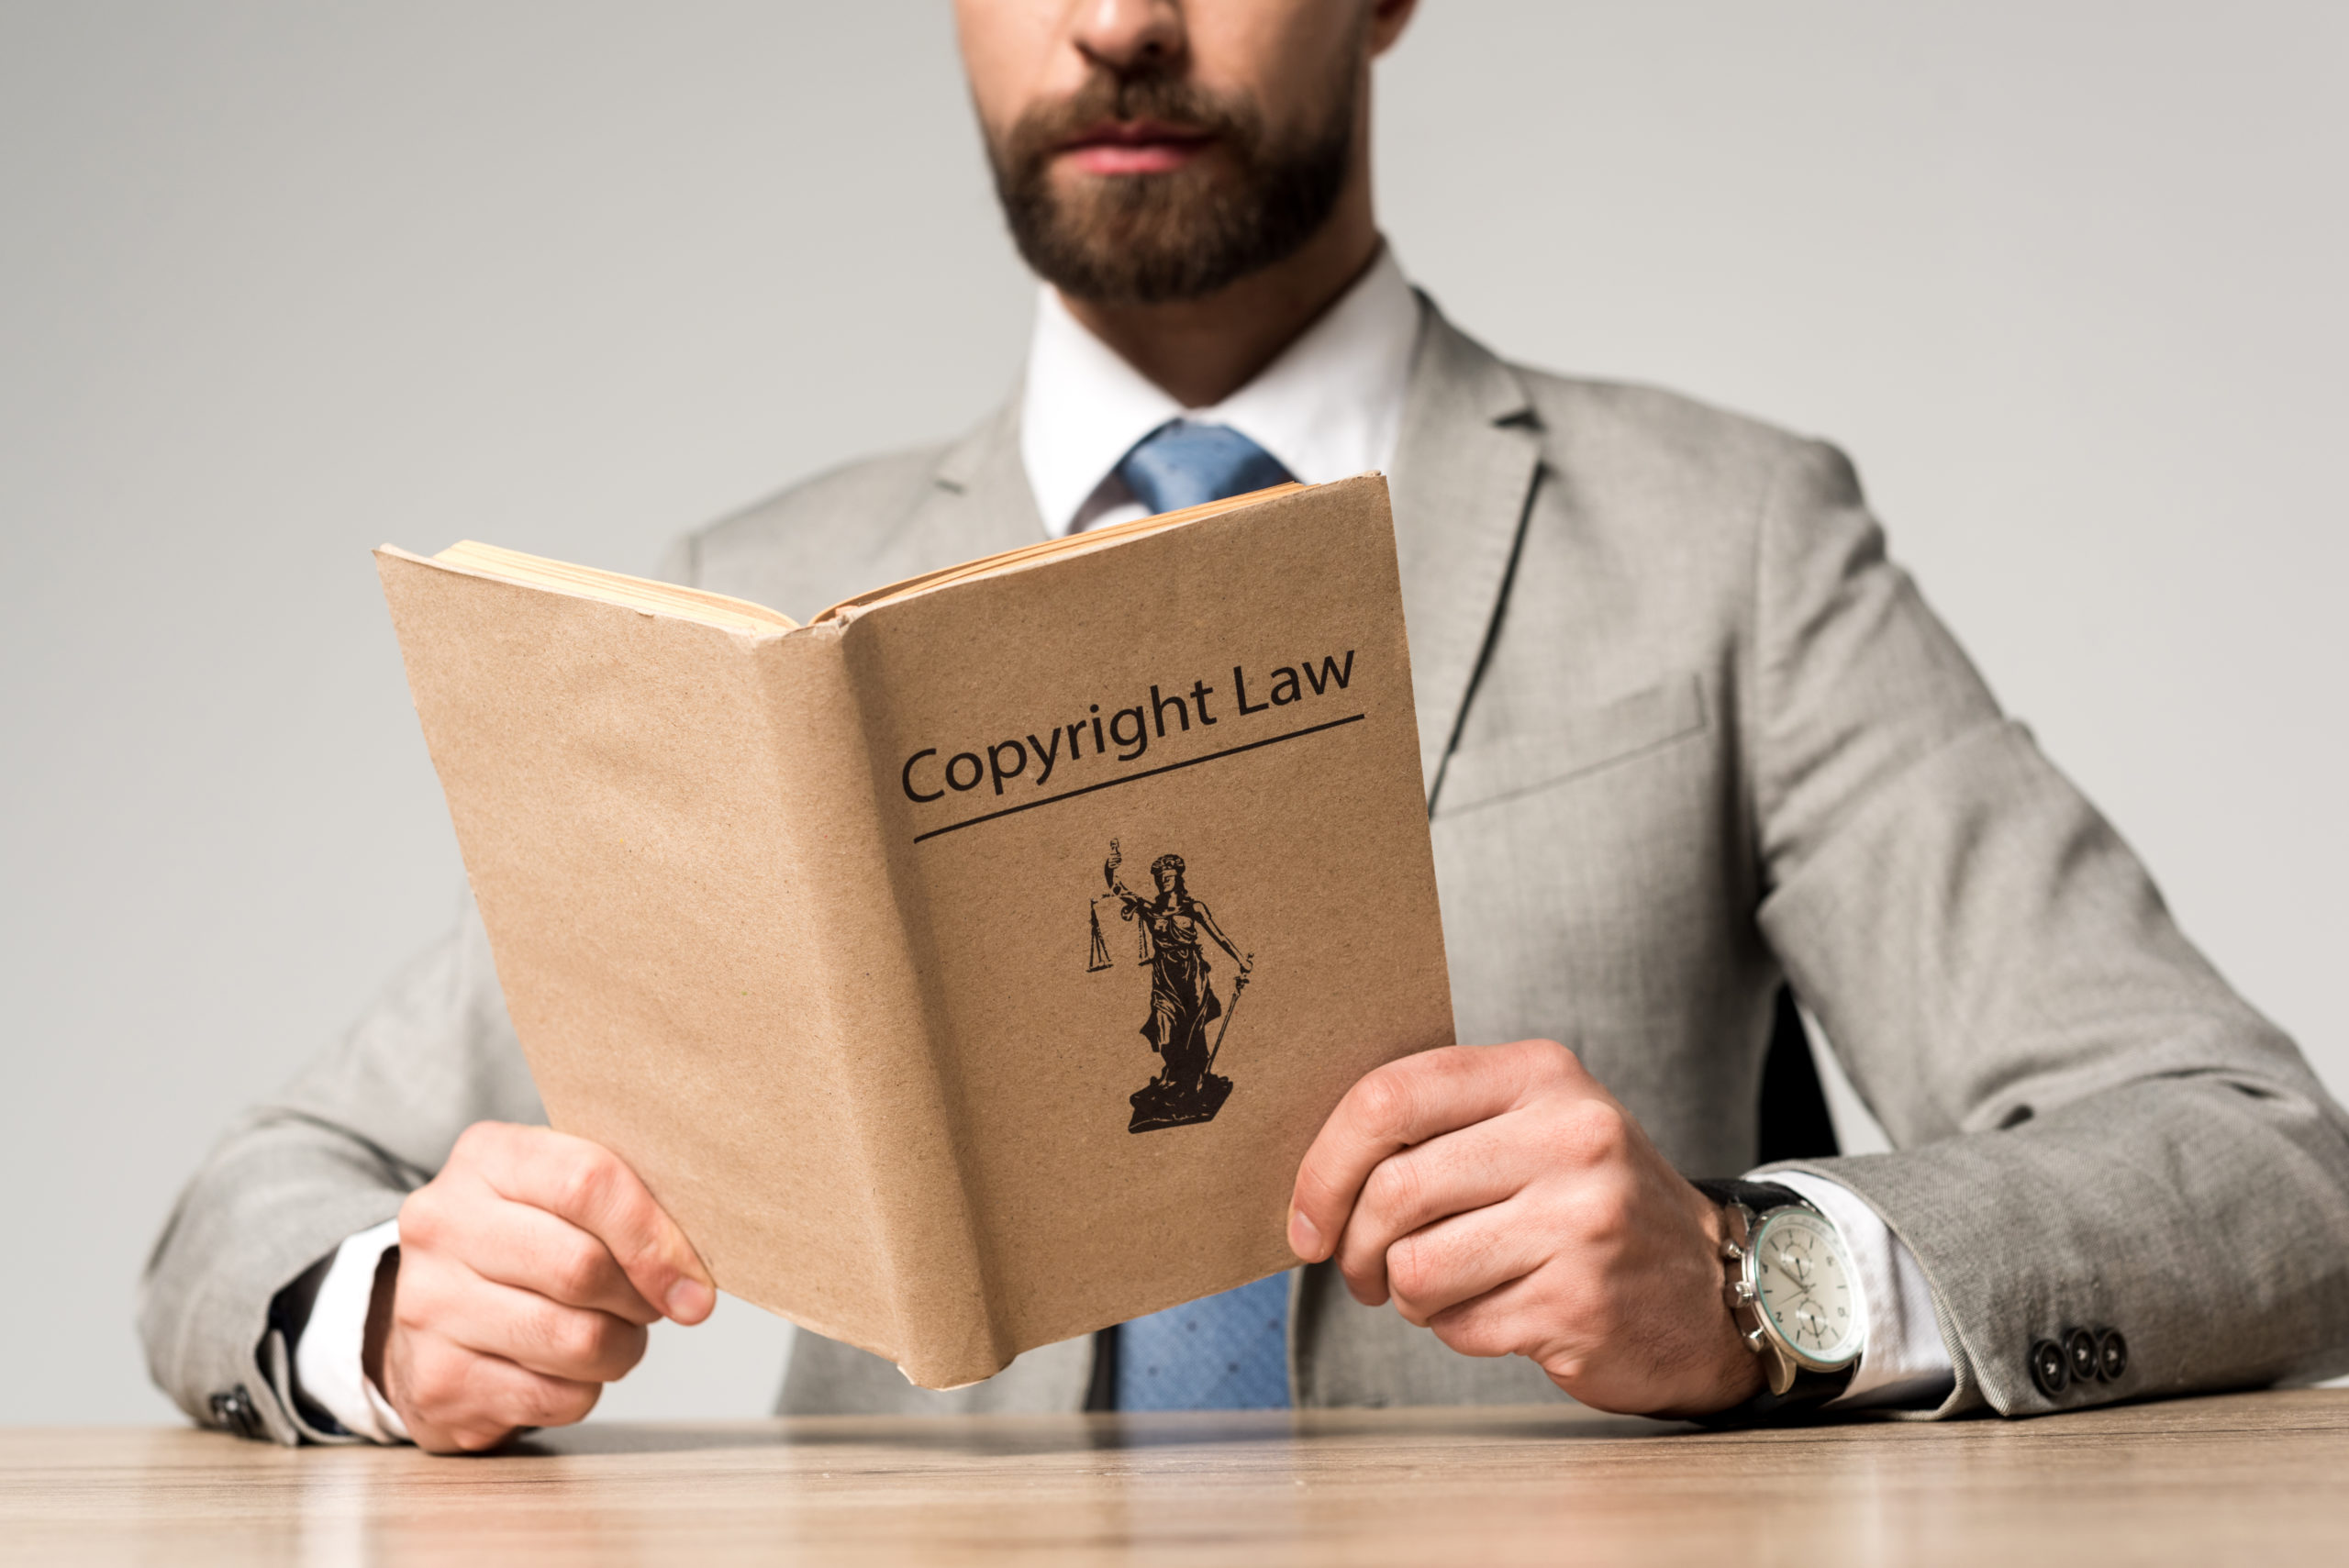 Premier jugement de la Service des décisions anticipées sur le régime réformé du droit d’auteur